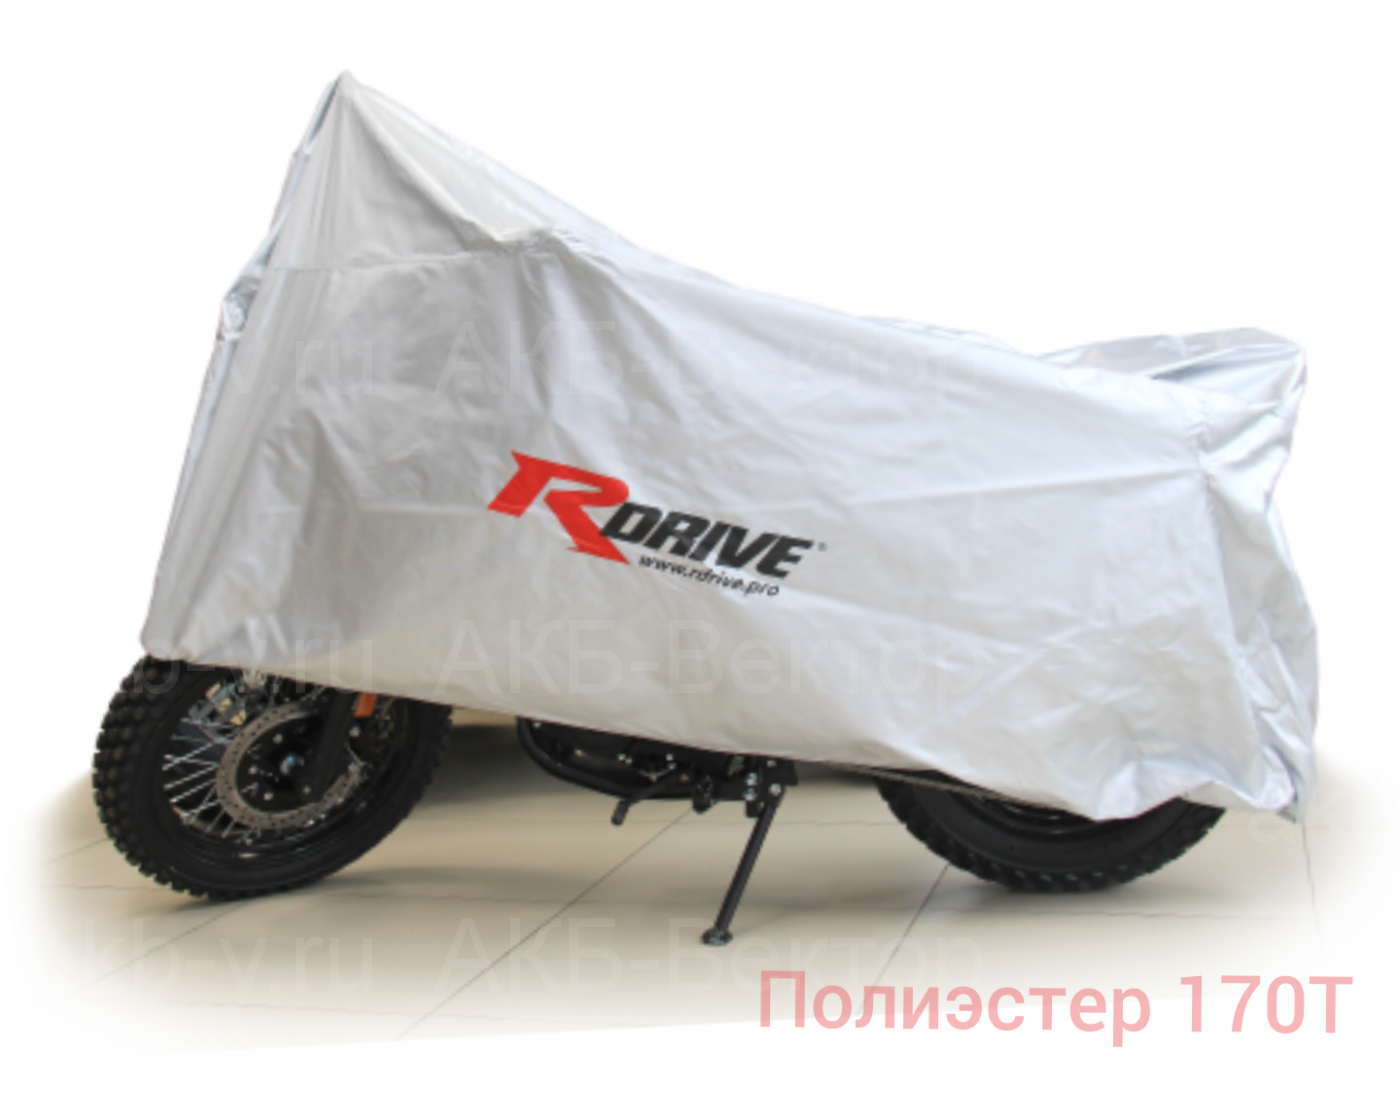 Тент-Чехол для мотоцикла RDrive Extra (полиэстер 170Т (L)